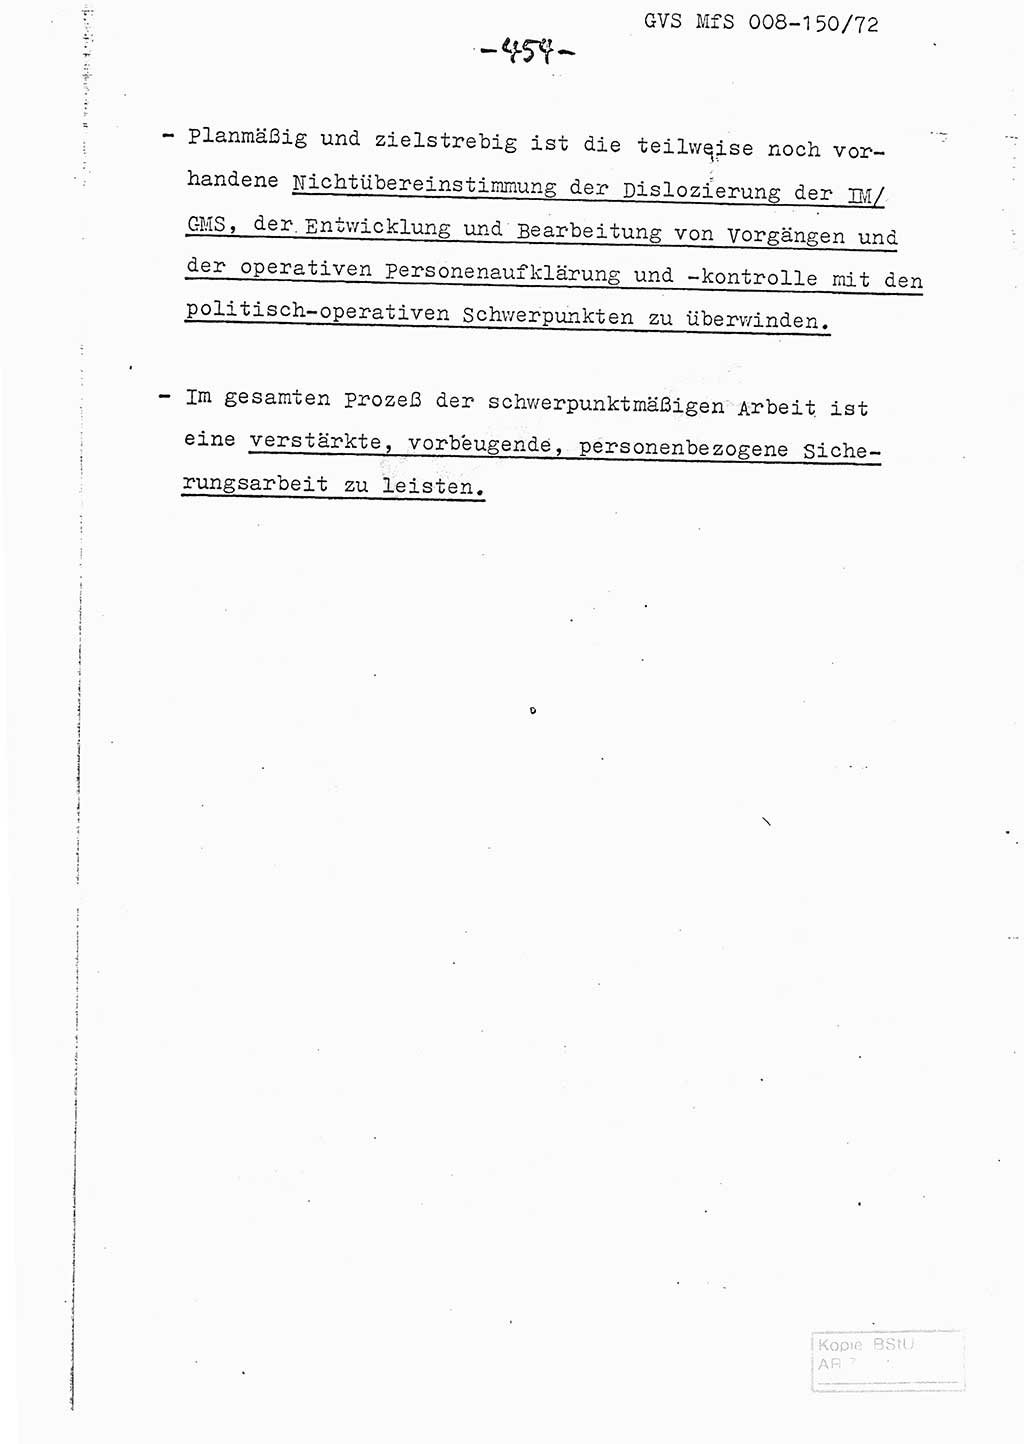 Referat (Entwurf) des Genossen Minister (Generaloberst Erich Mielke) auf der Dienstkonferenz 1972, Ministerium für Staatssicherheit (MfS) [Deutsche Demokratische Republik (DDR)], Der Minister, Geheime Verschlußsache (GVS) 008-150/72, Berlin 25.2.1972, Seite 454 (Ref. Entw. DK MfS DDR Min. GVS 008-150/72 1972, S. 454)